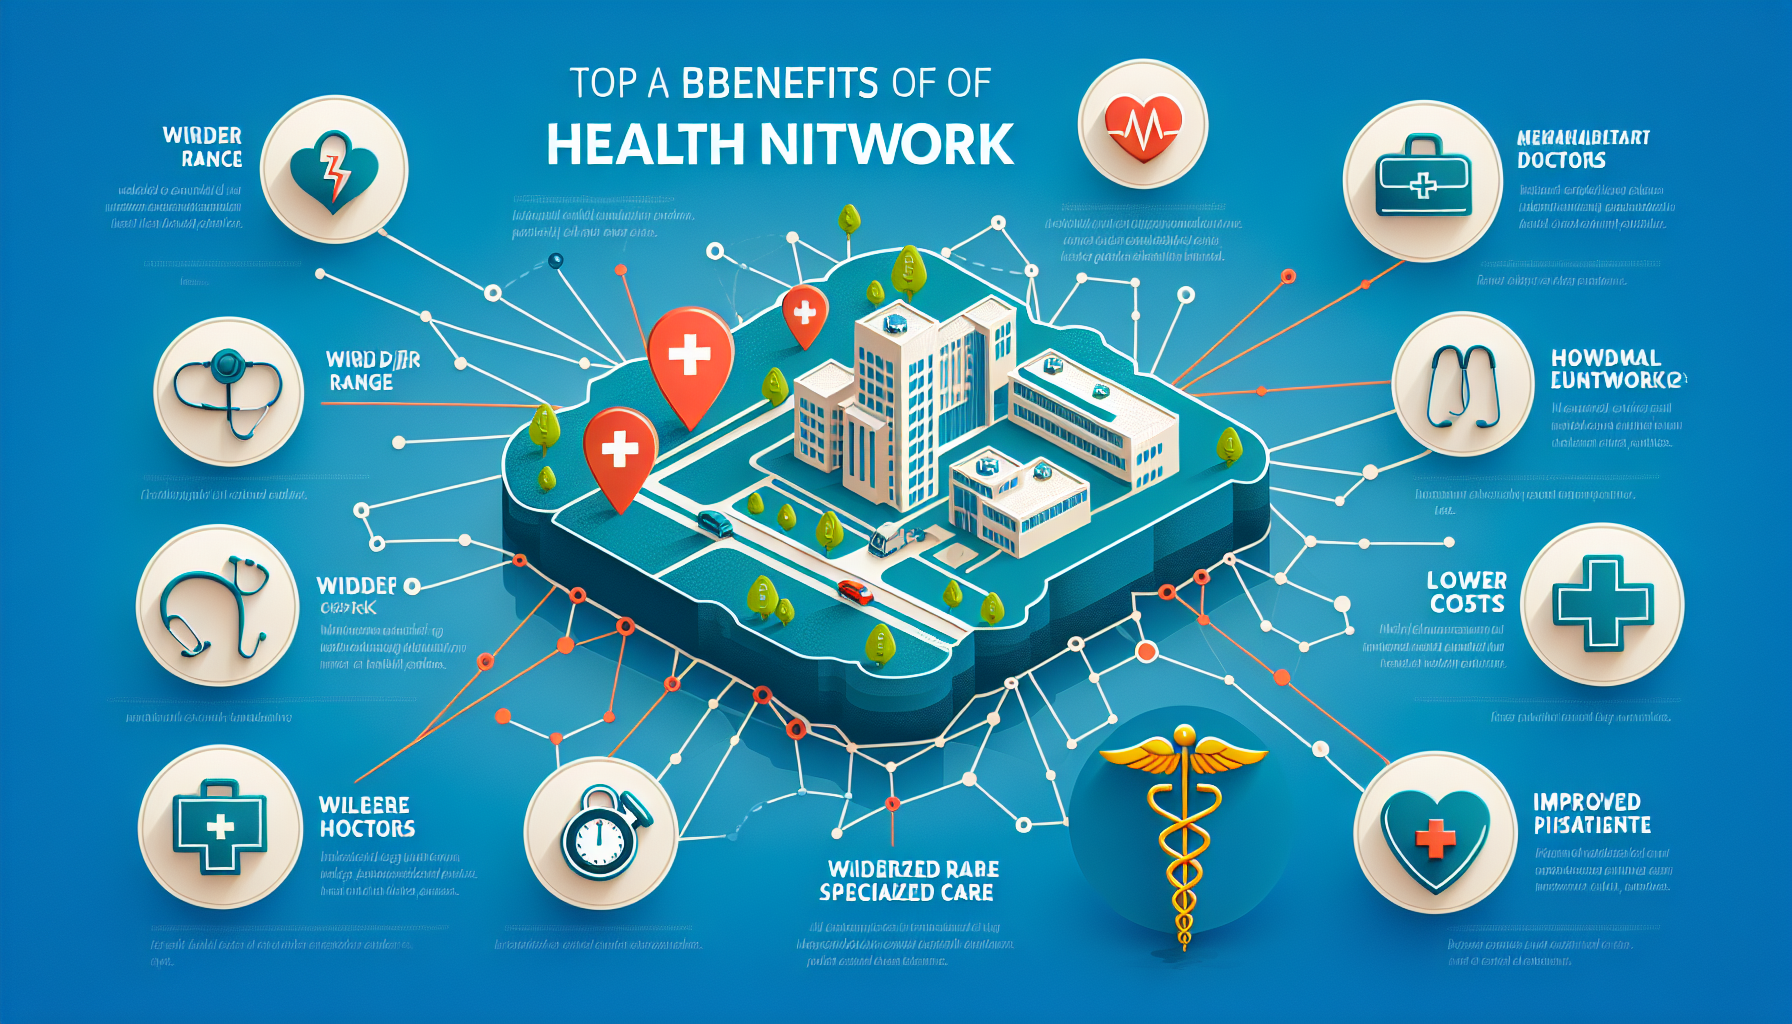 découvrez les nombreux avantages d'un réseau de soins pour une mutuelle santé à la réunion et comment cela peut vous aider à accéder à des services de santé de qualité.